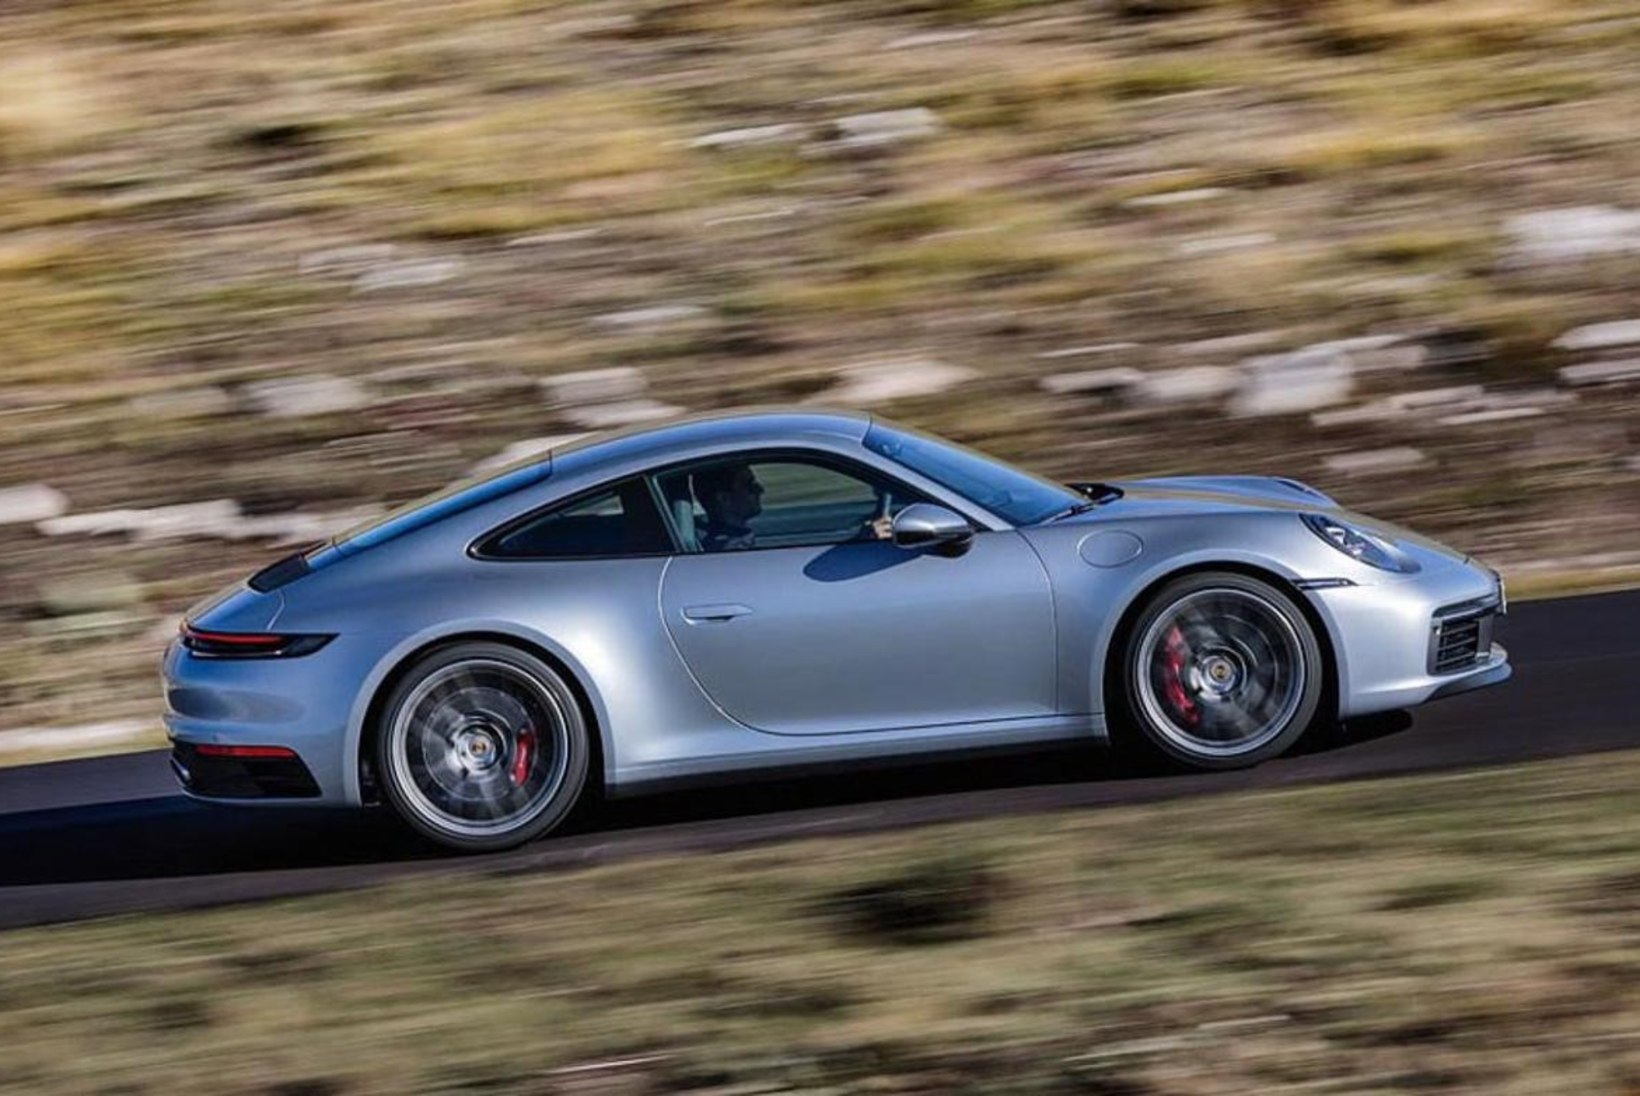 Lähivaates kaheksanda põlvkonna Porsche 911 – klassikat aeg ei murra!